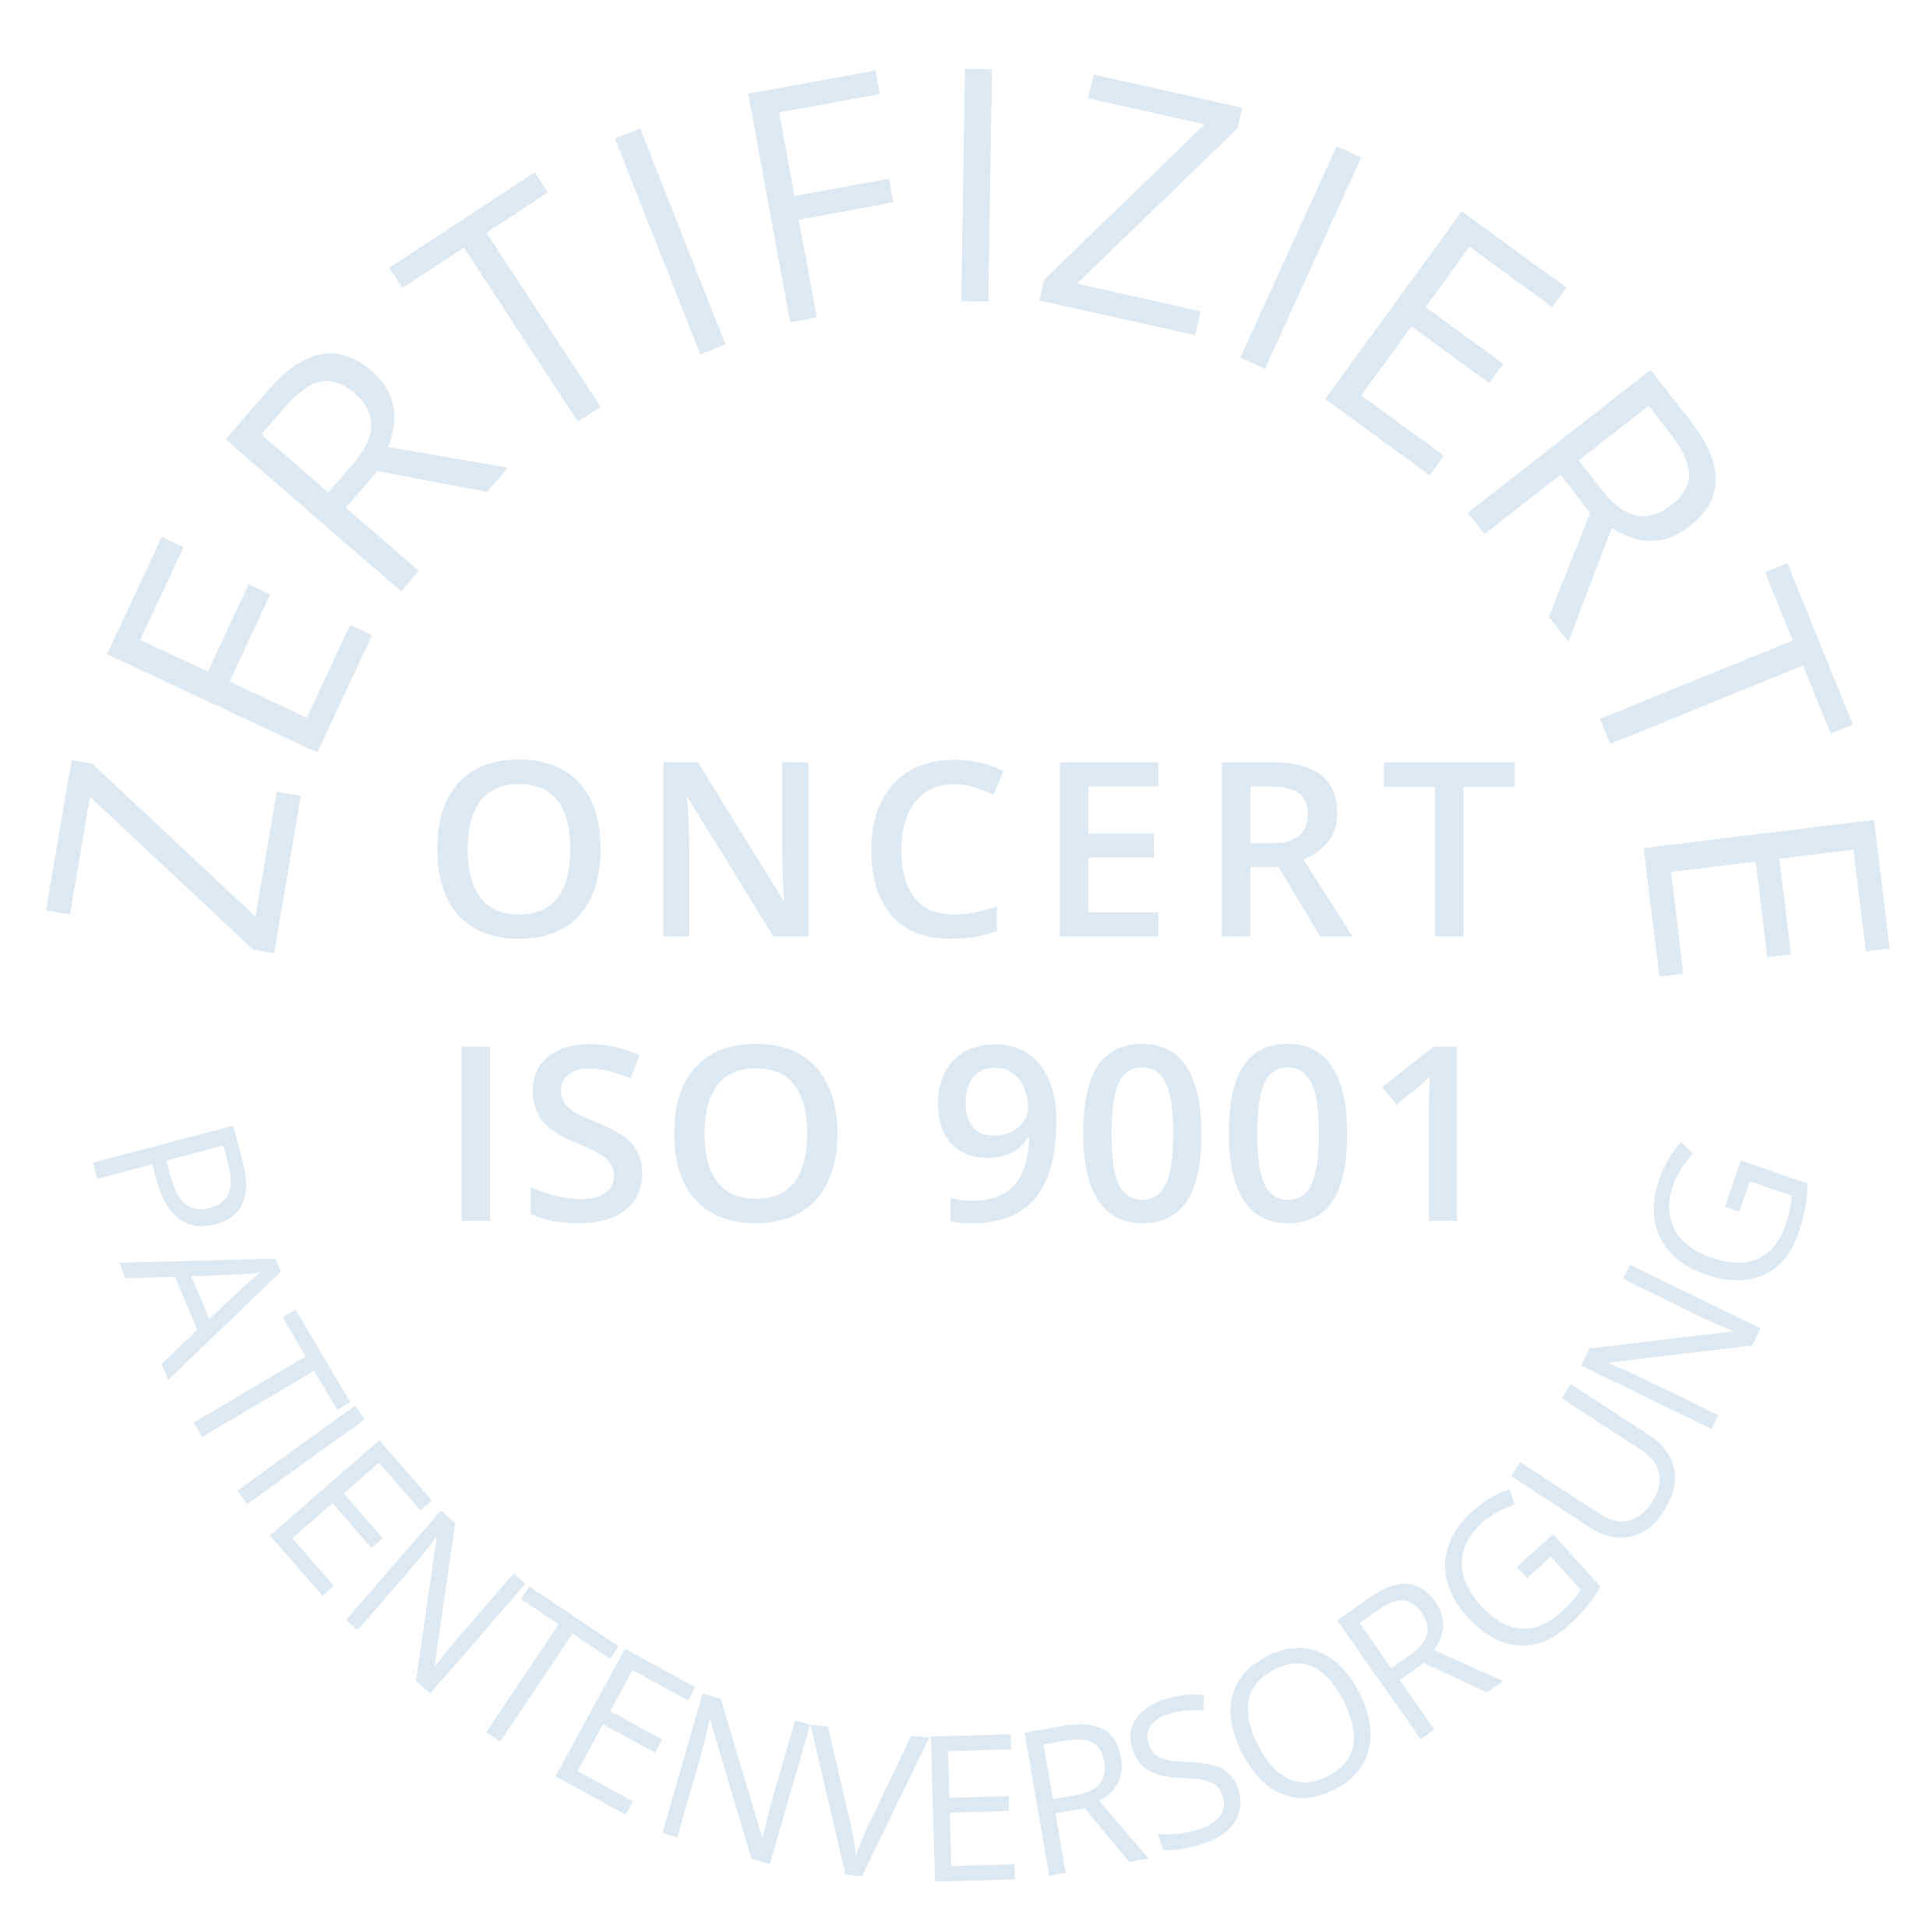 Abbildung von ISO 9001:2015 Zertifizierung